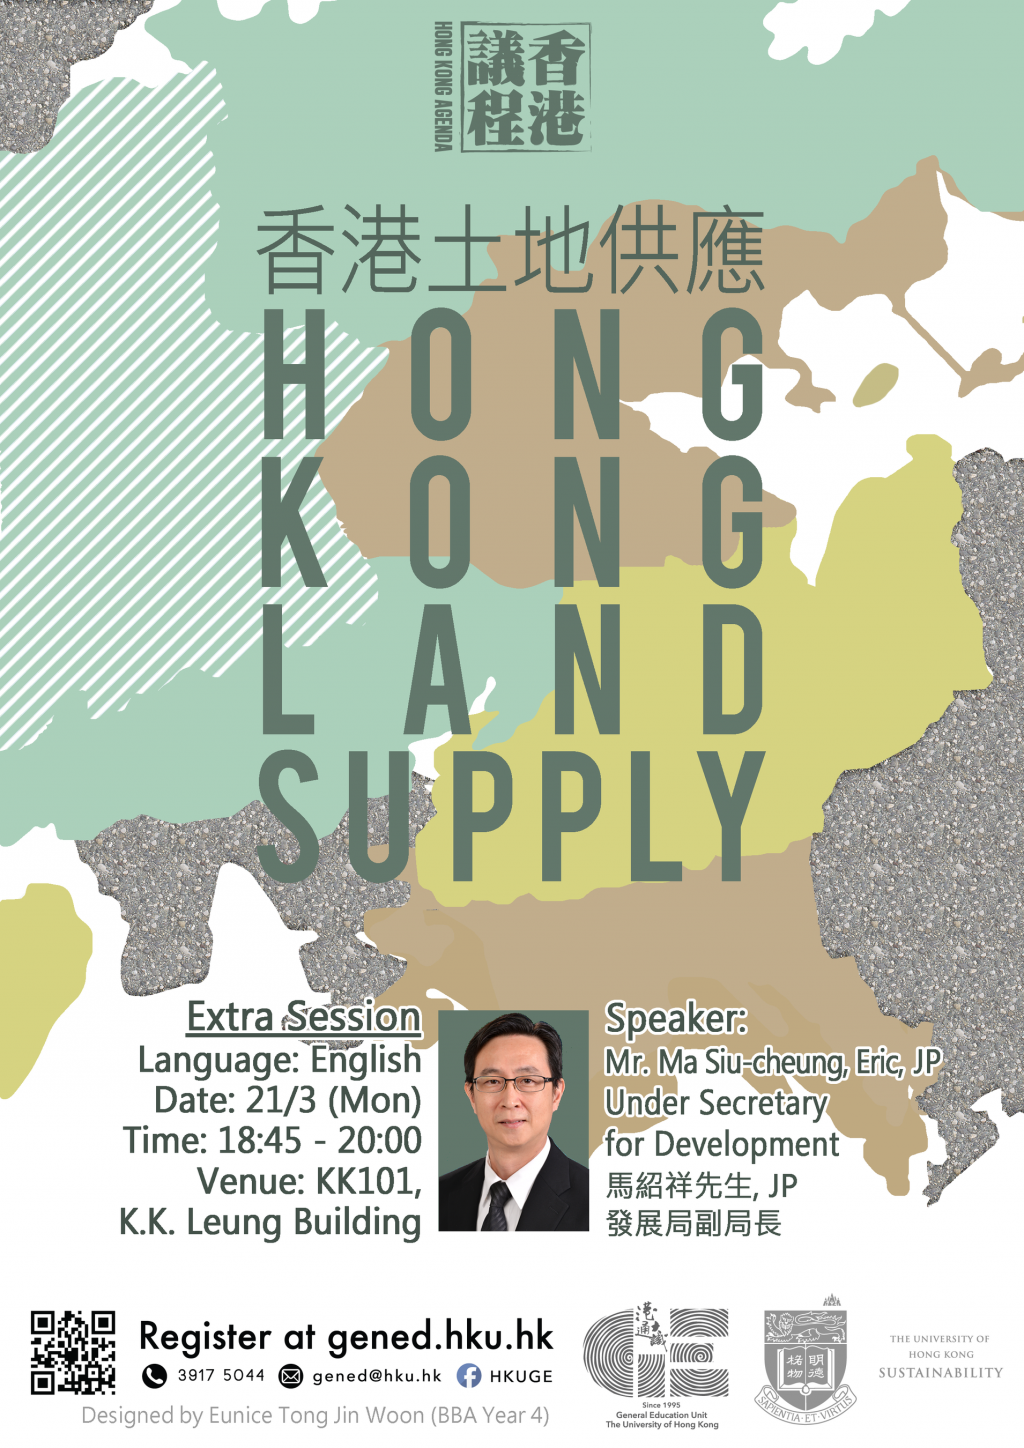 Hong Kong Land Supply 香港土地供應